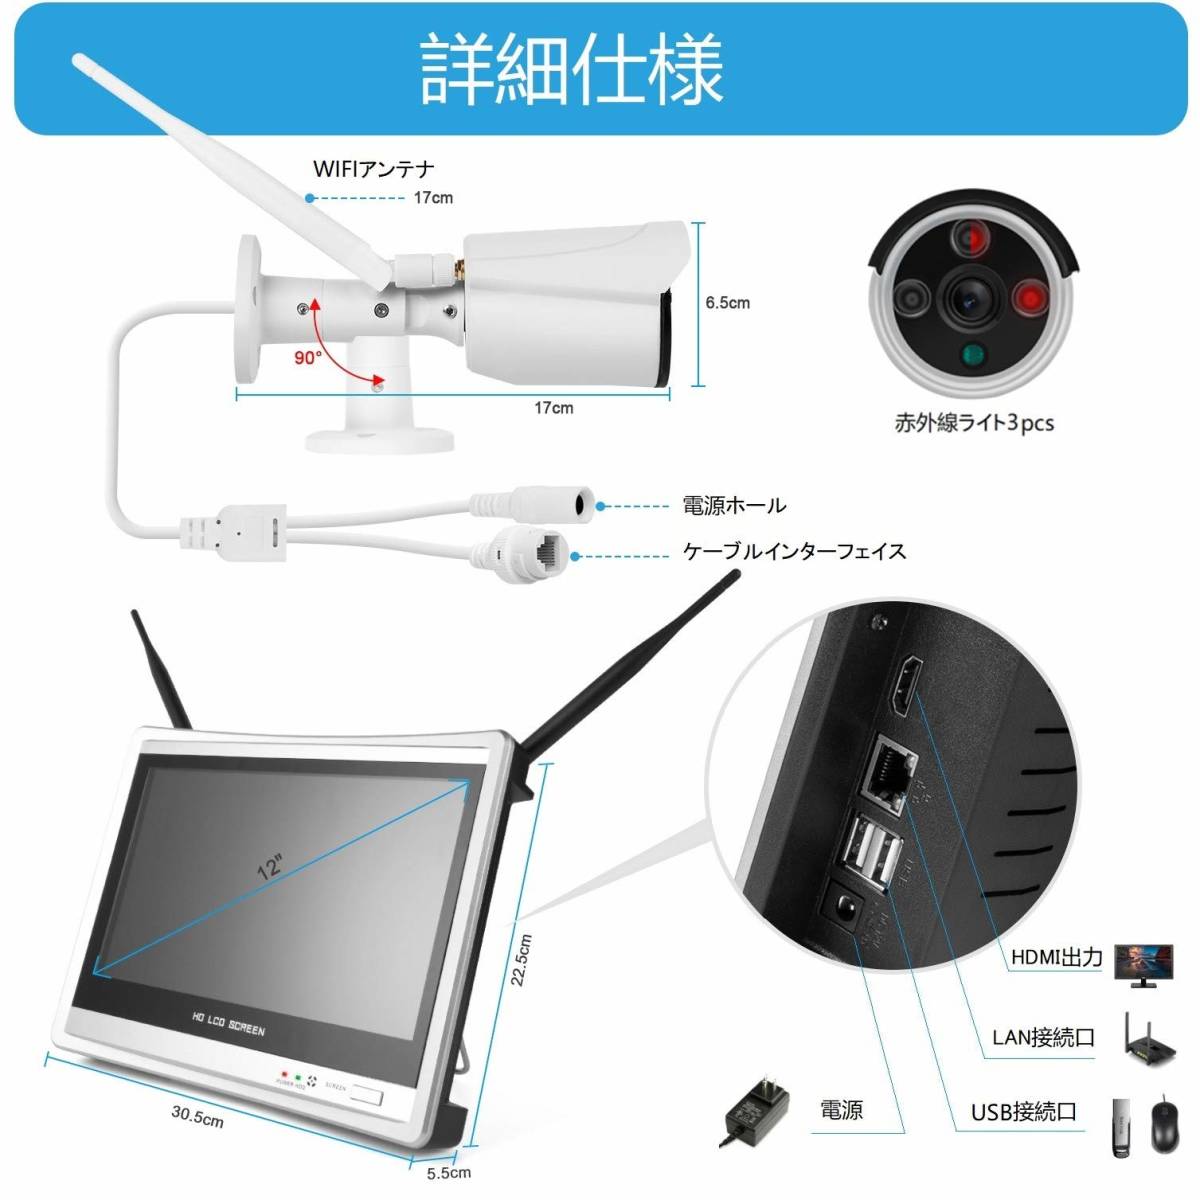  камера системы безопасности 200 десять тысяч пикселей 1080p высокое разрешение мониторинг камера комплект беспроводной 4 шт. 4 канал 12.5 дюймовый монитор 1TB HDD встроенный японский язык система соответствует 